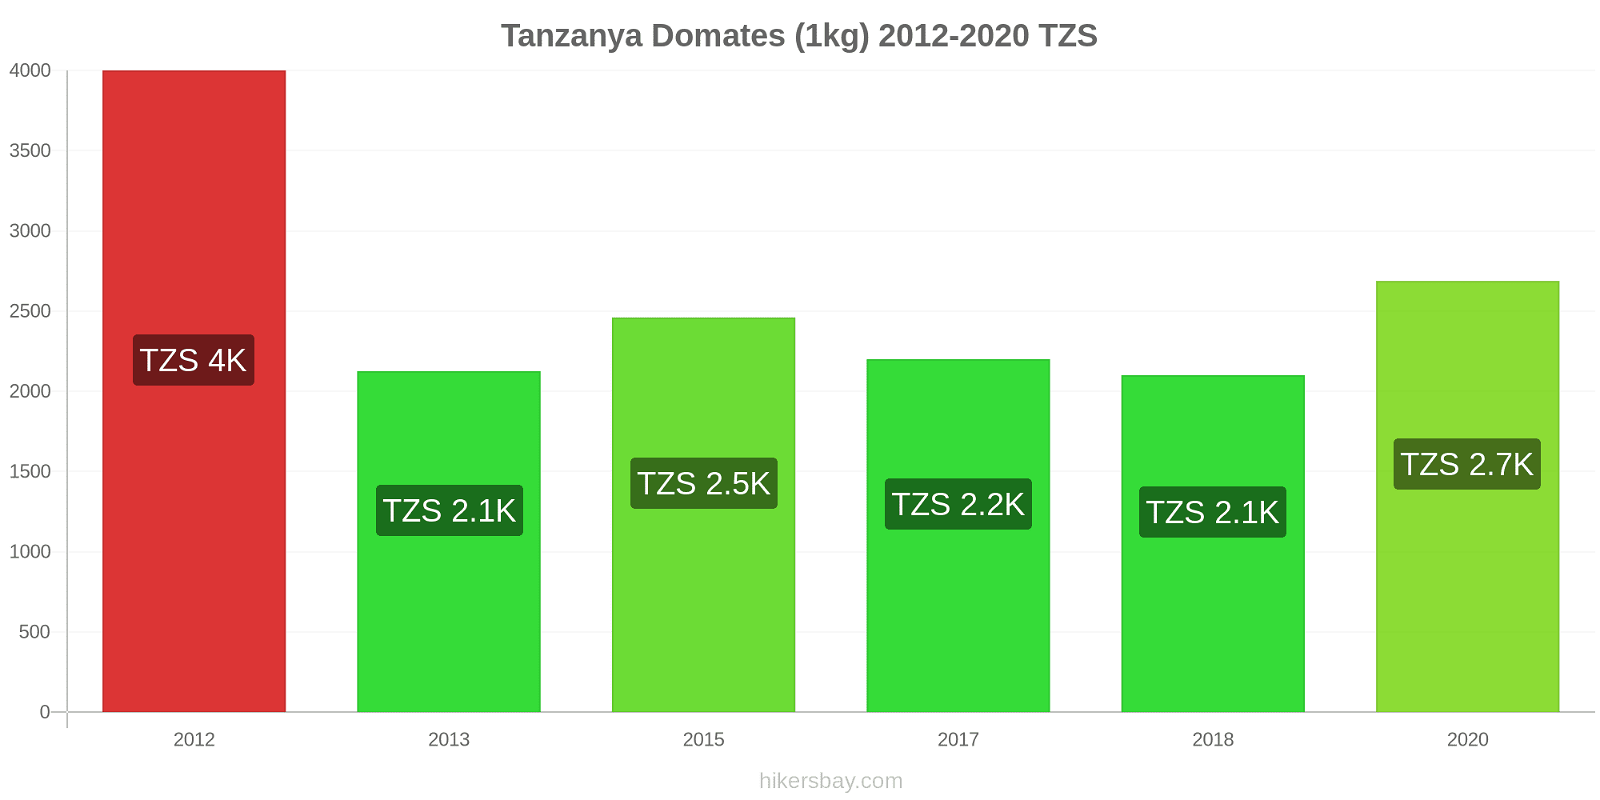 Tanzanya fiyat değişiklikleri Domates (1kg) hikersbay.com